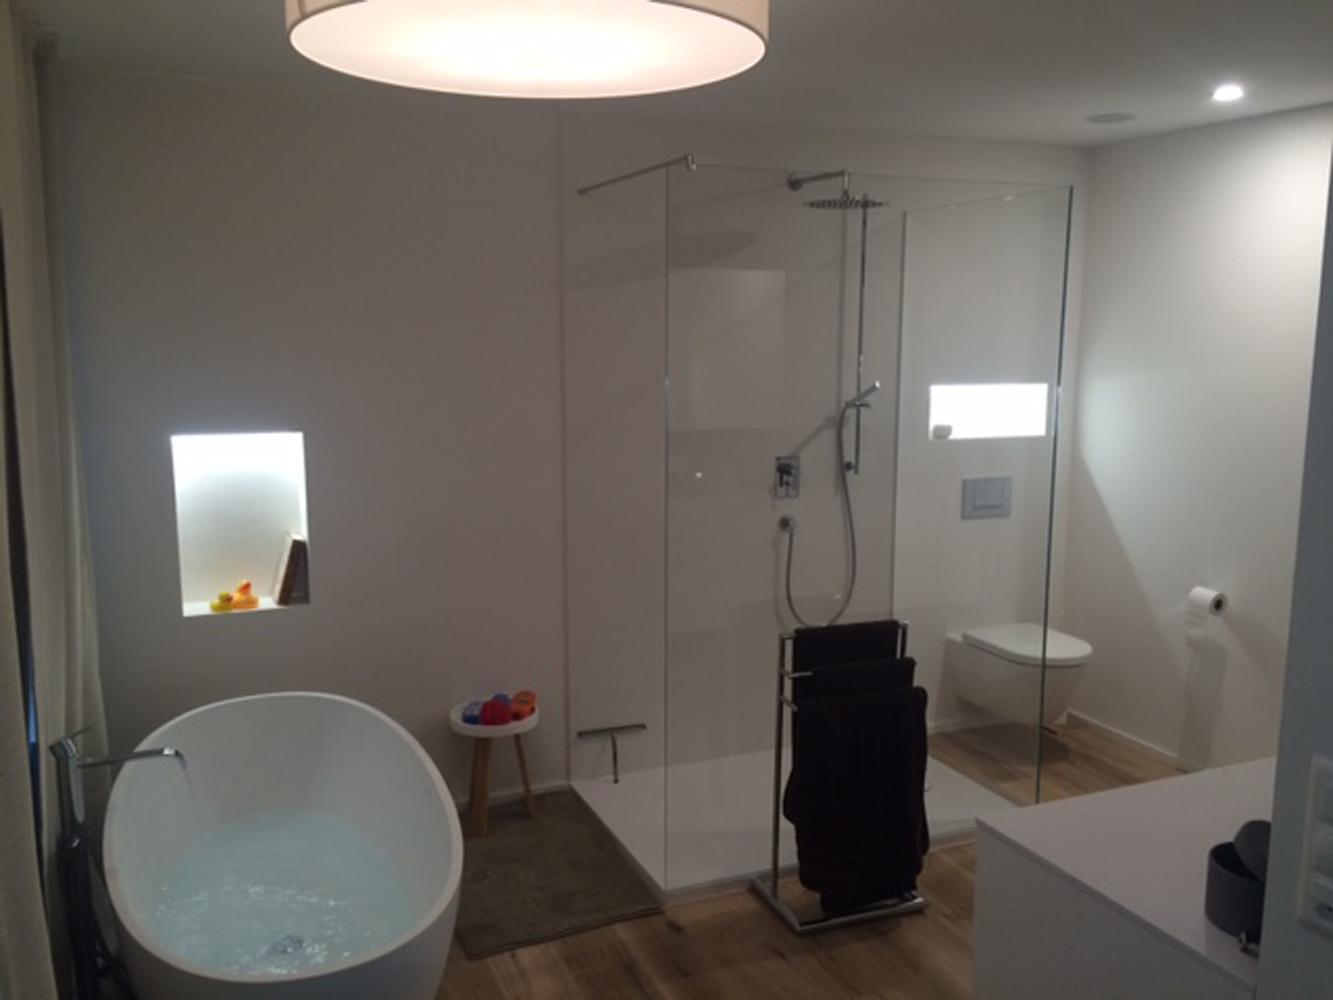 Badezimmer mit Piemont Medio #badewanne #badezimmer ©Bädermax